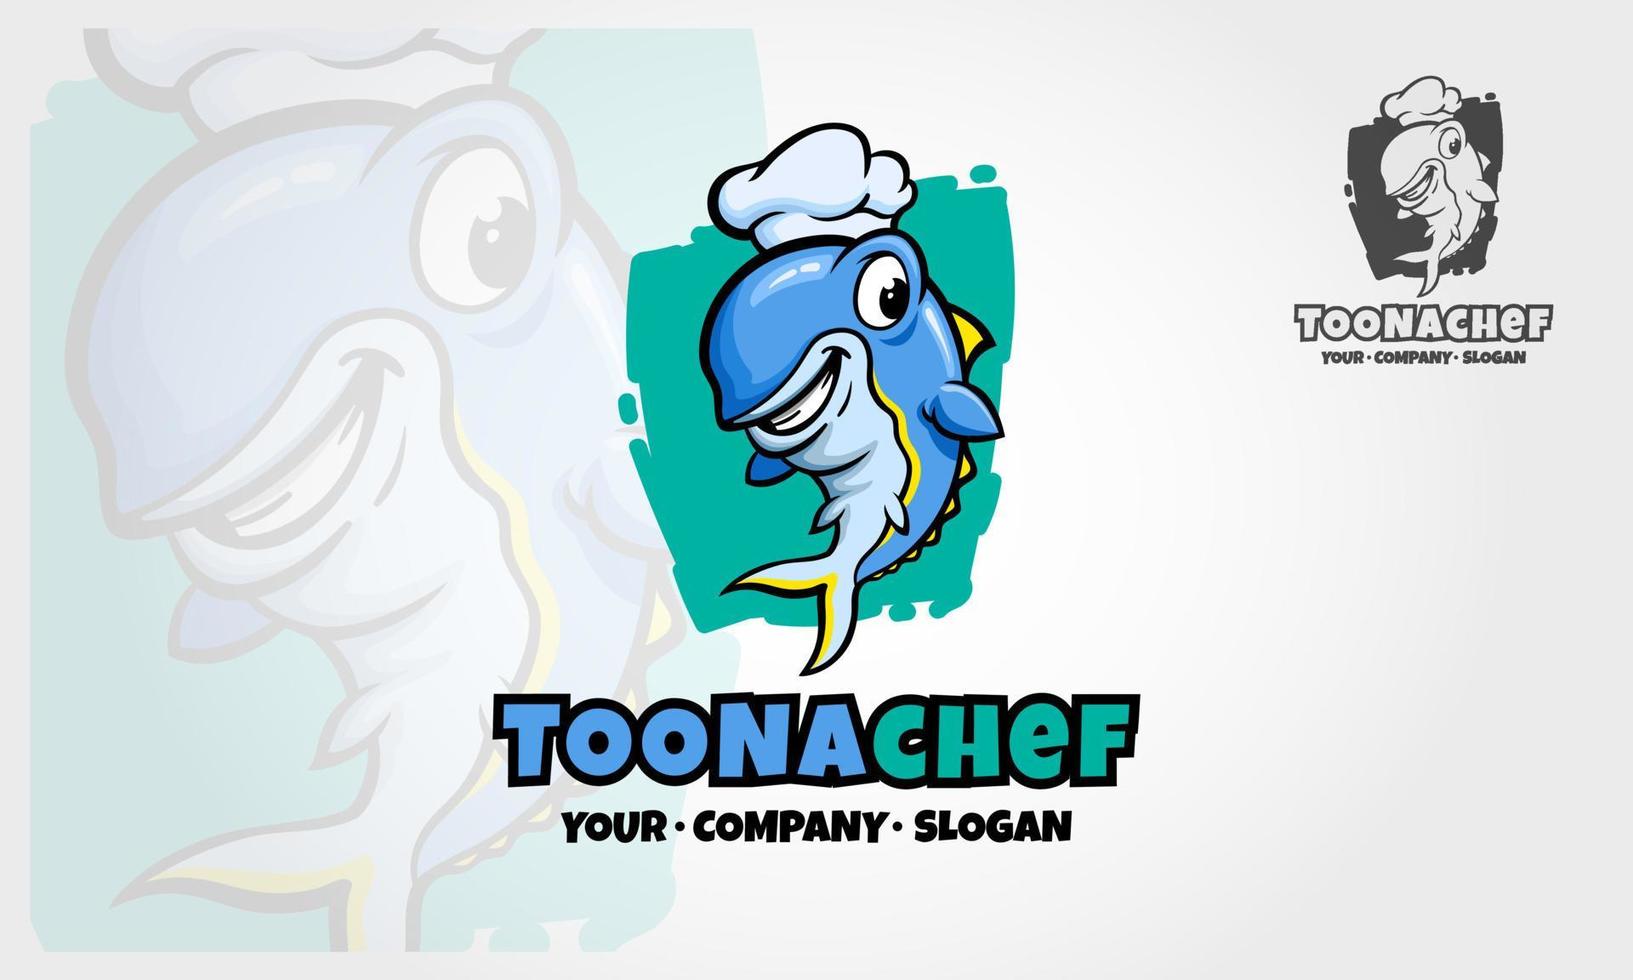 toonachef-Vektor-Logo-Illustration. Illustration eines Fischkochs im Cartoon-Stil. glückliche fischfiguren der karikatur. vektor